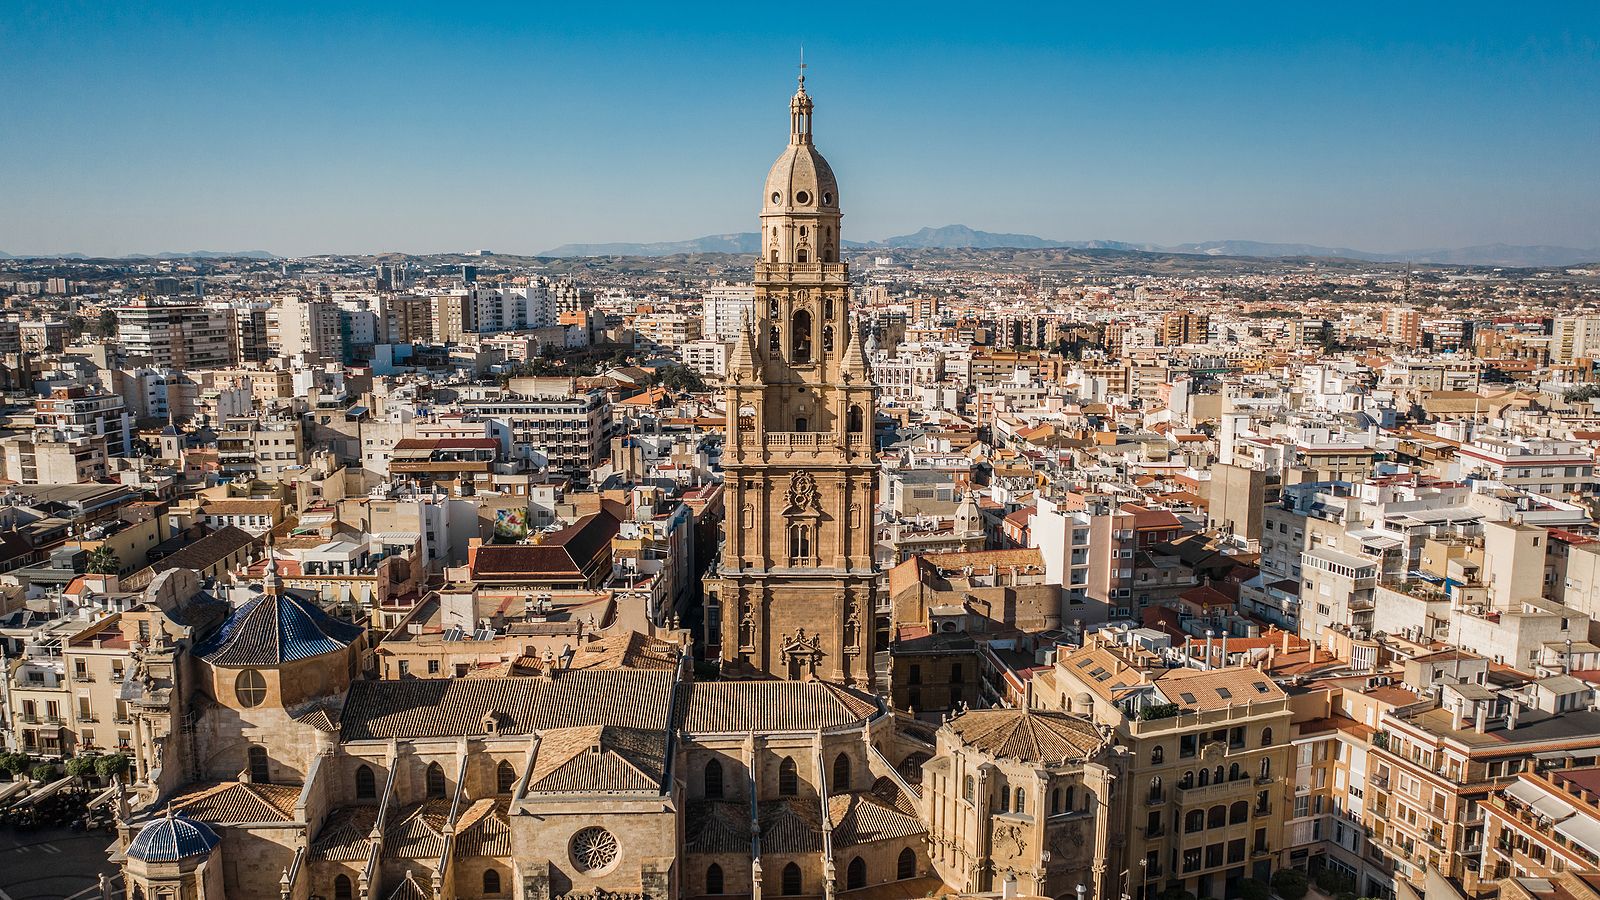 Hallan en Murcia una de las torres ibéricas más grandes de España